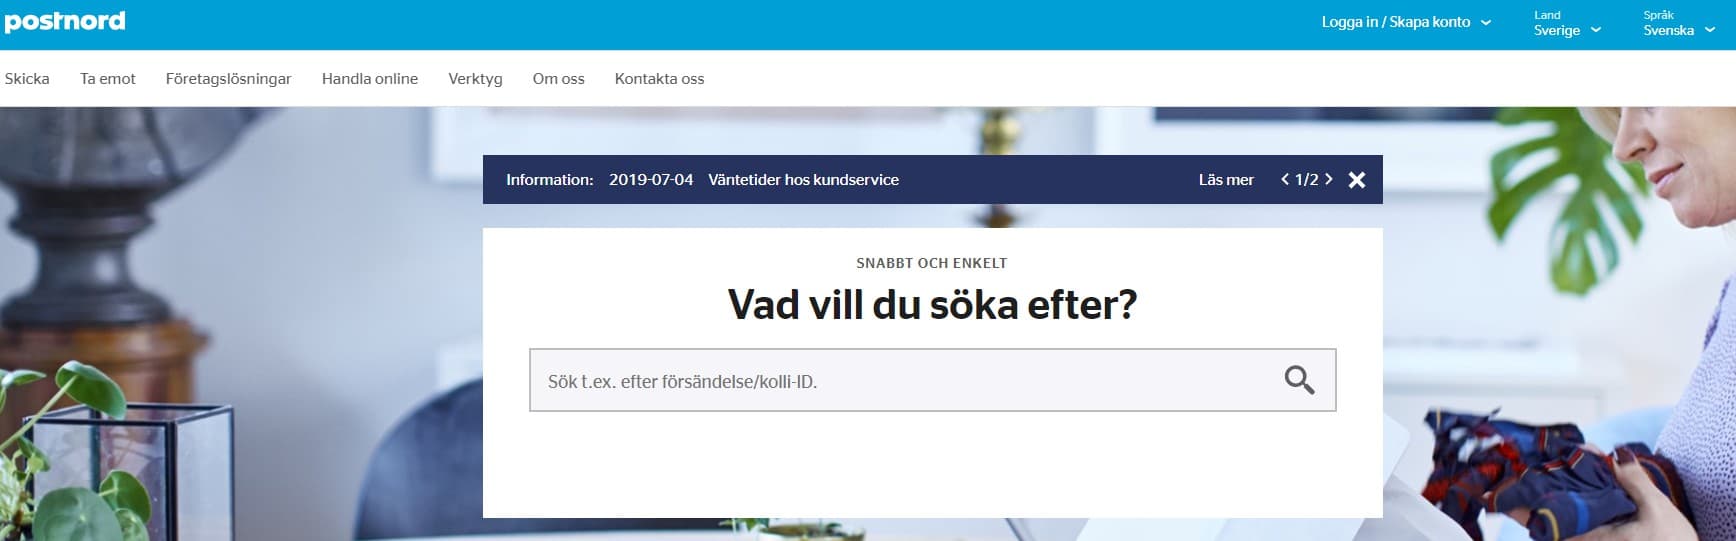 Отслеживание посылок на сайте Почты Швеции